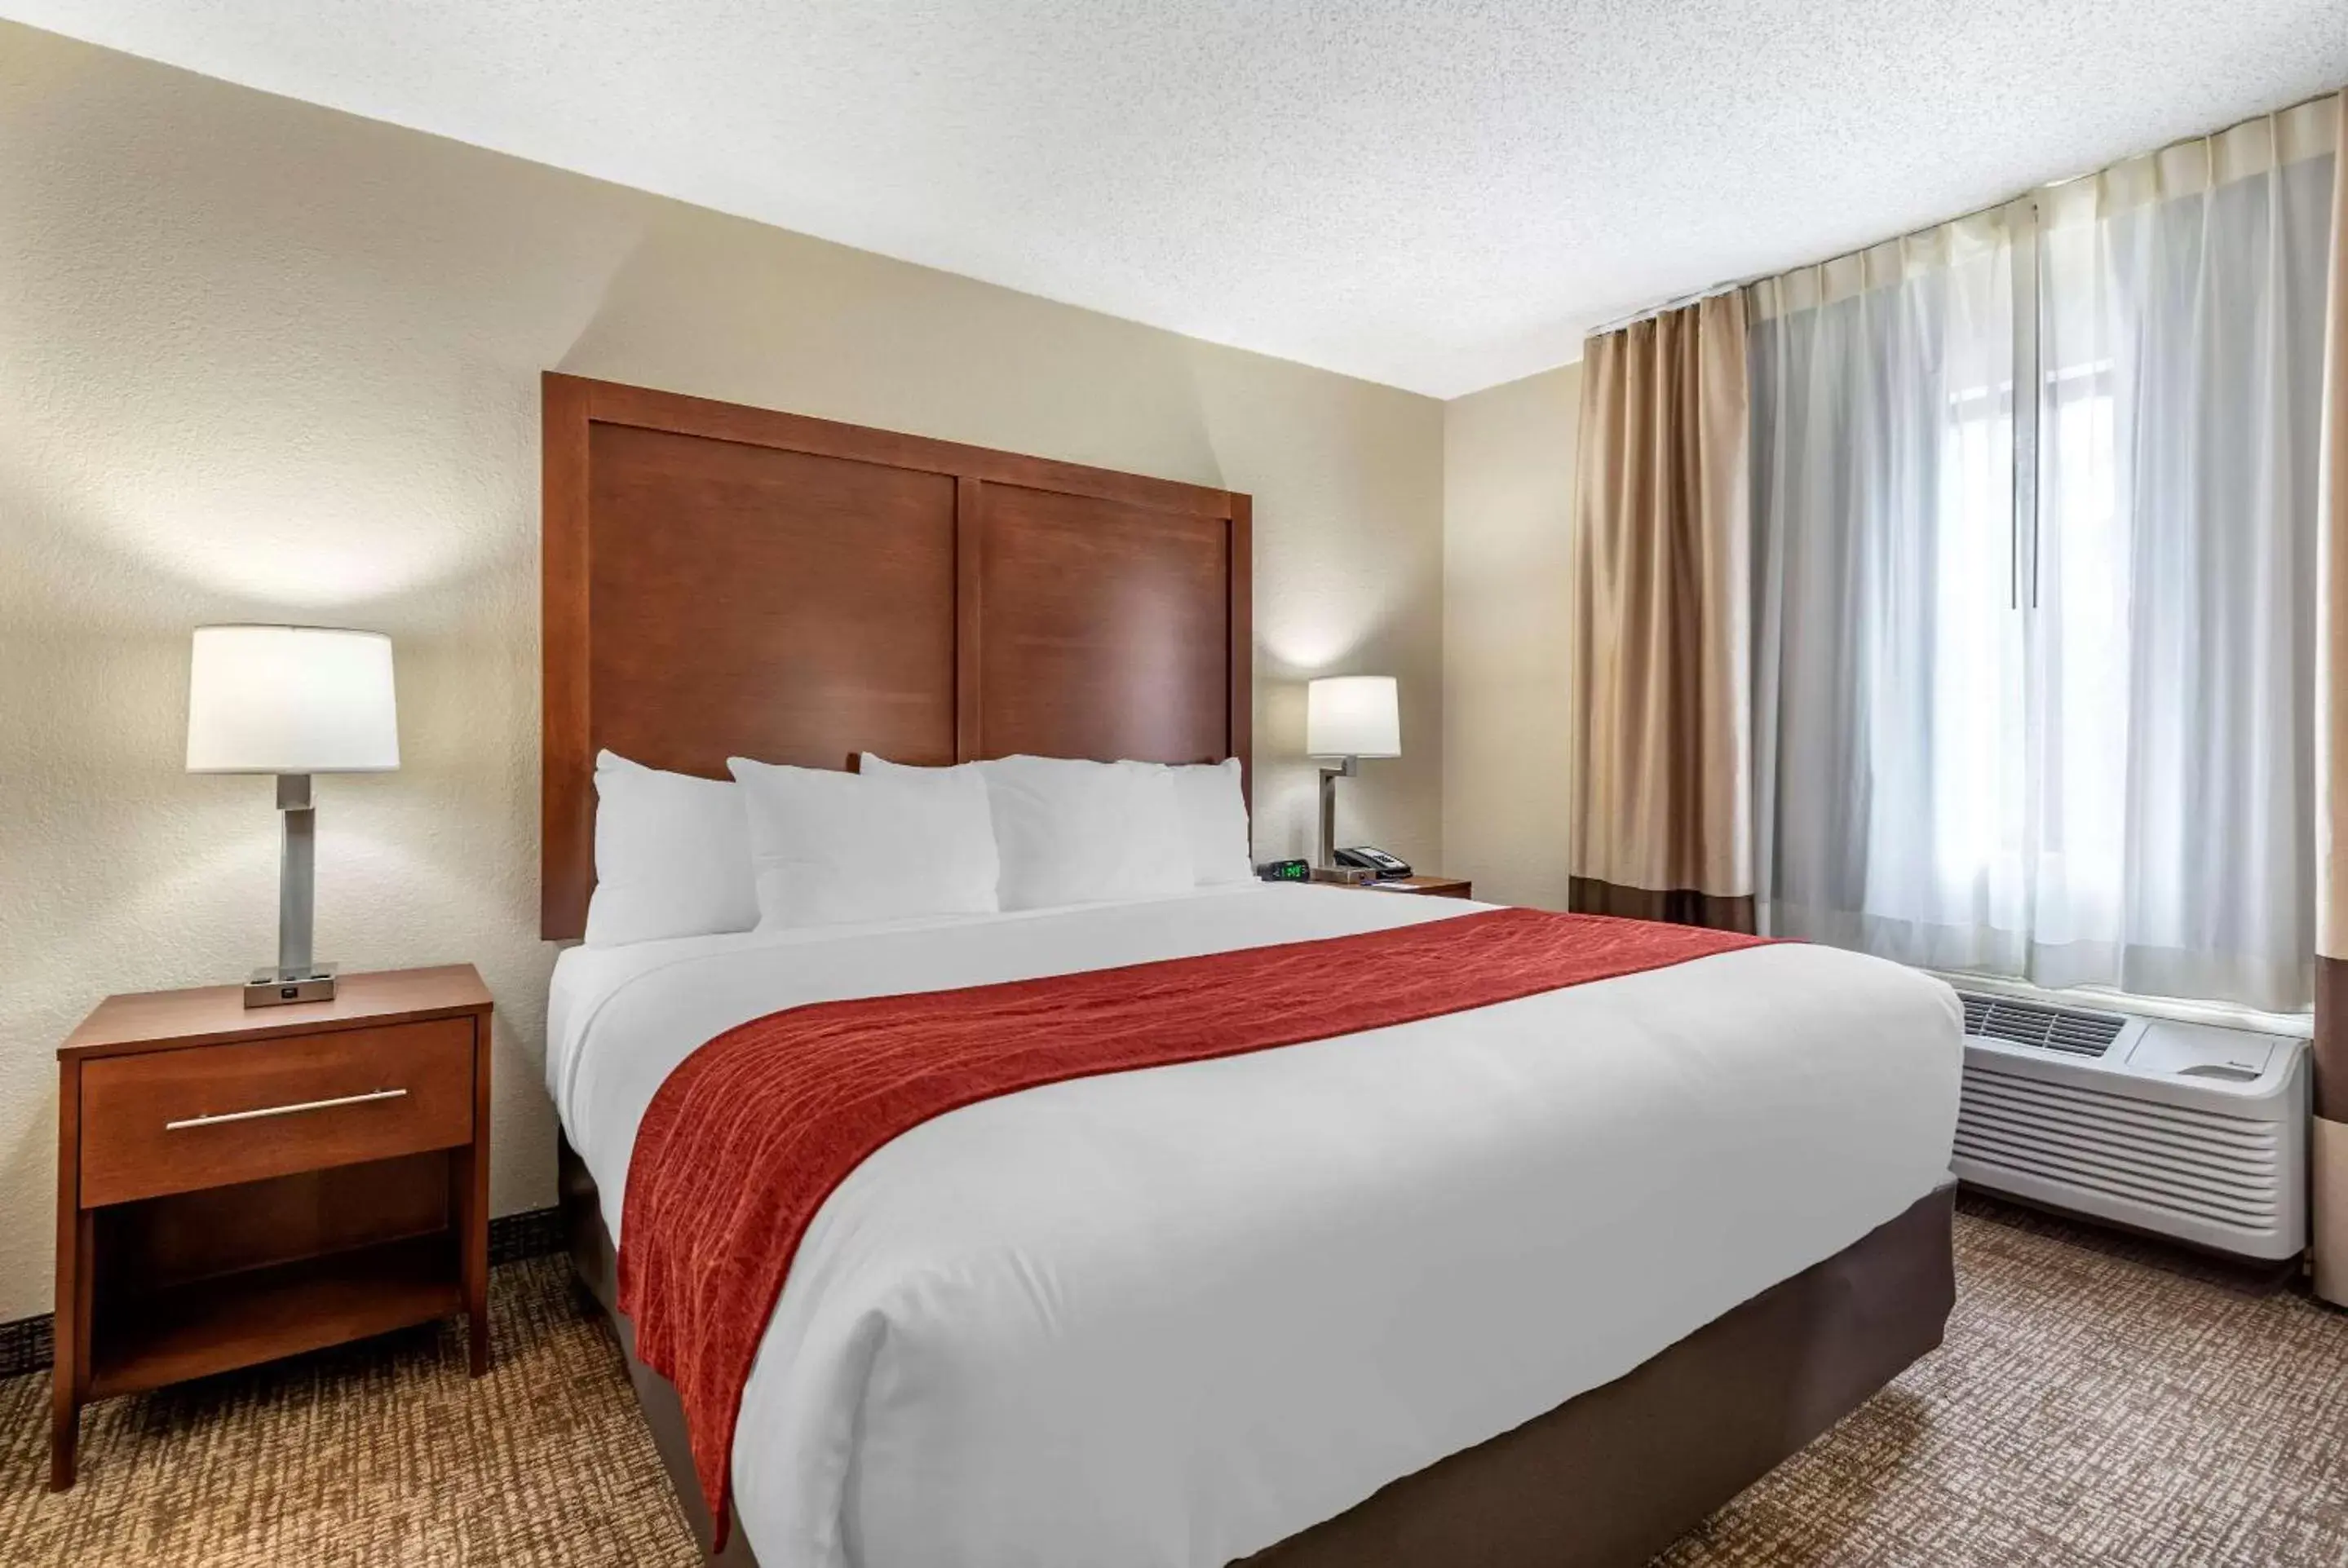 Bedroom, Bed in Comfort Inn & Suites Middletown - Franklin